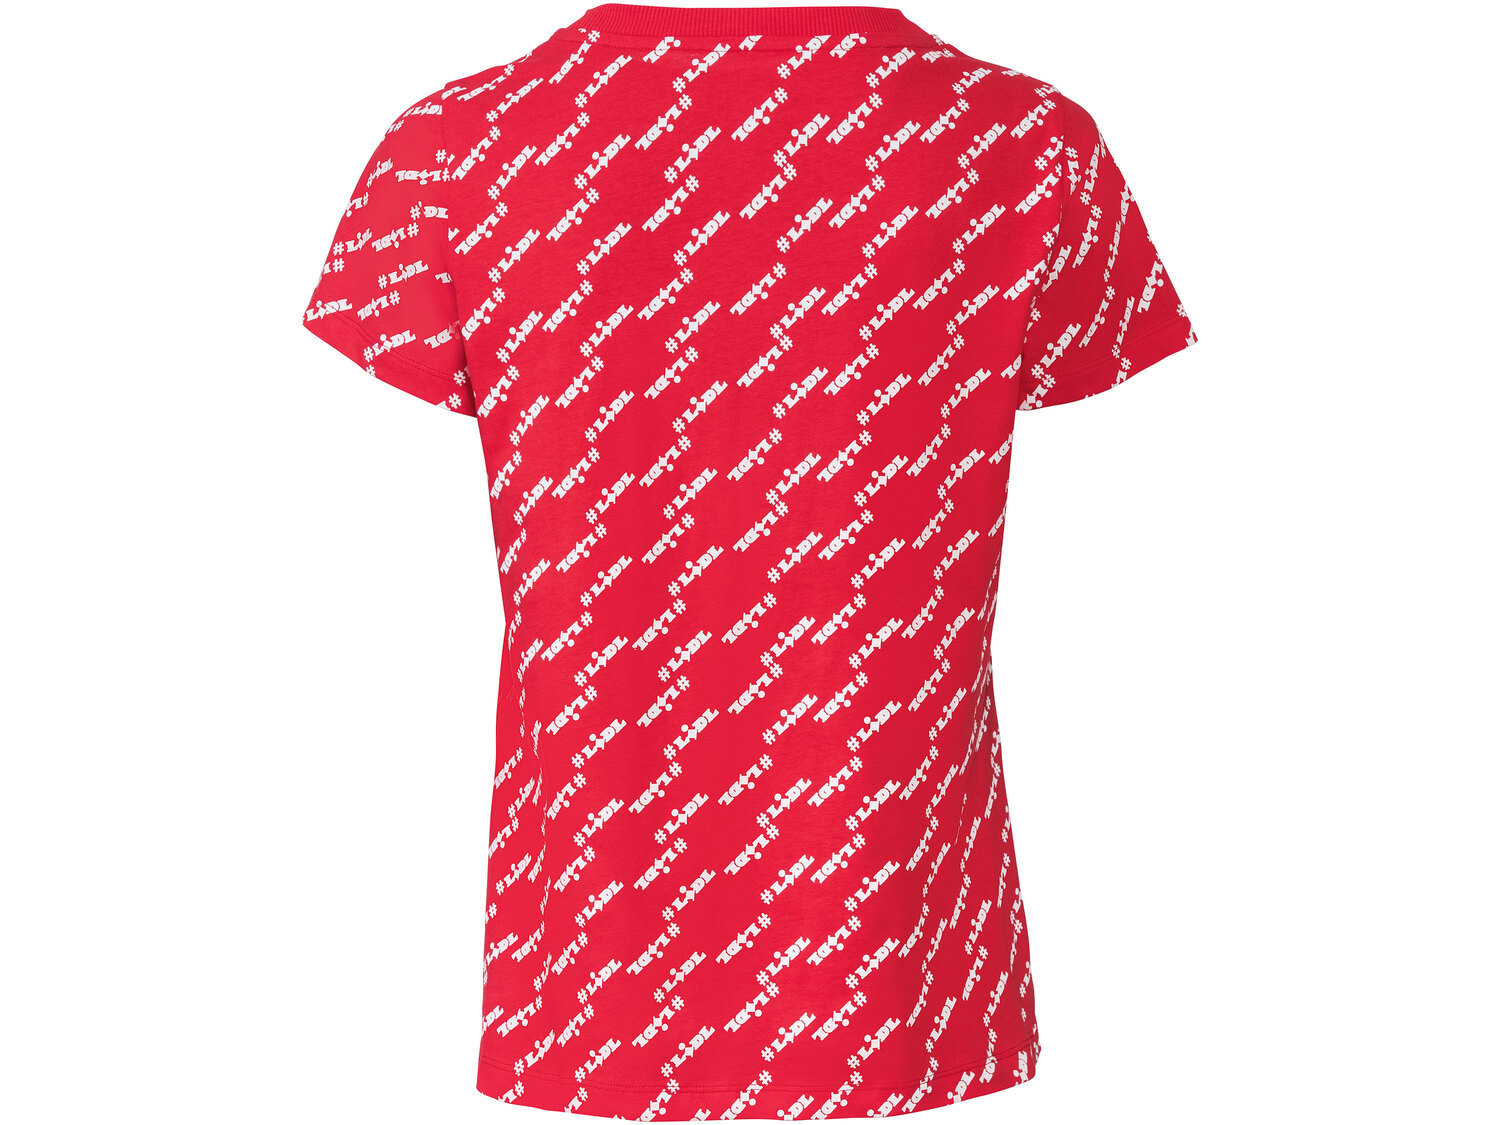 T-shirt damski z kolekcji LIDL Oeko Tex, cena 24,99 PLN 
- 100% bawełny
- rozmiary: ...